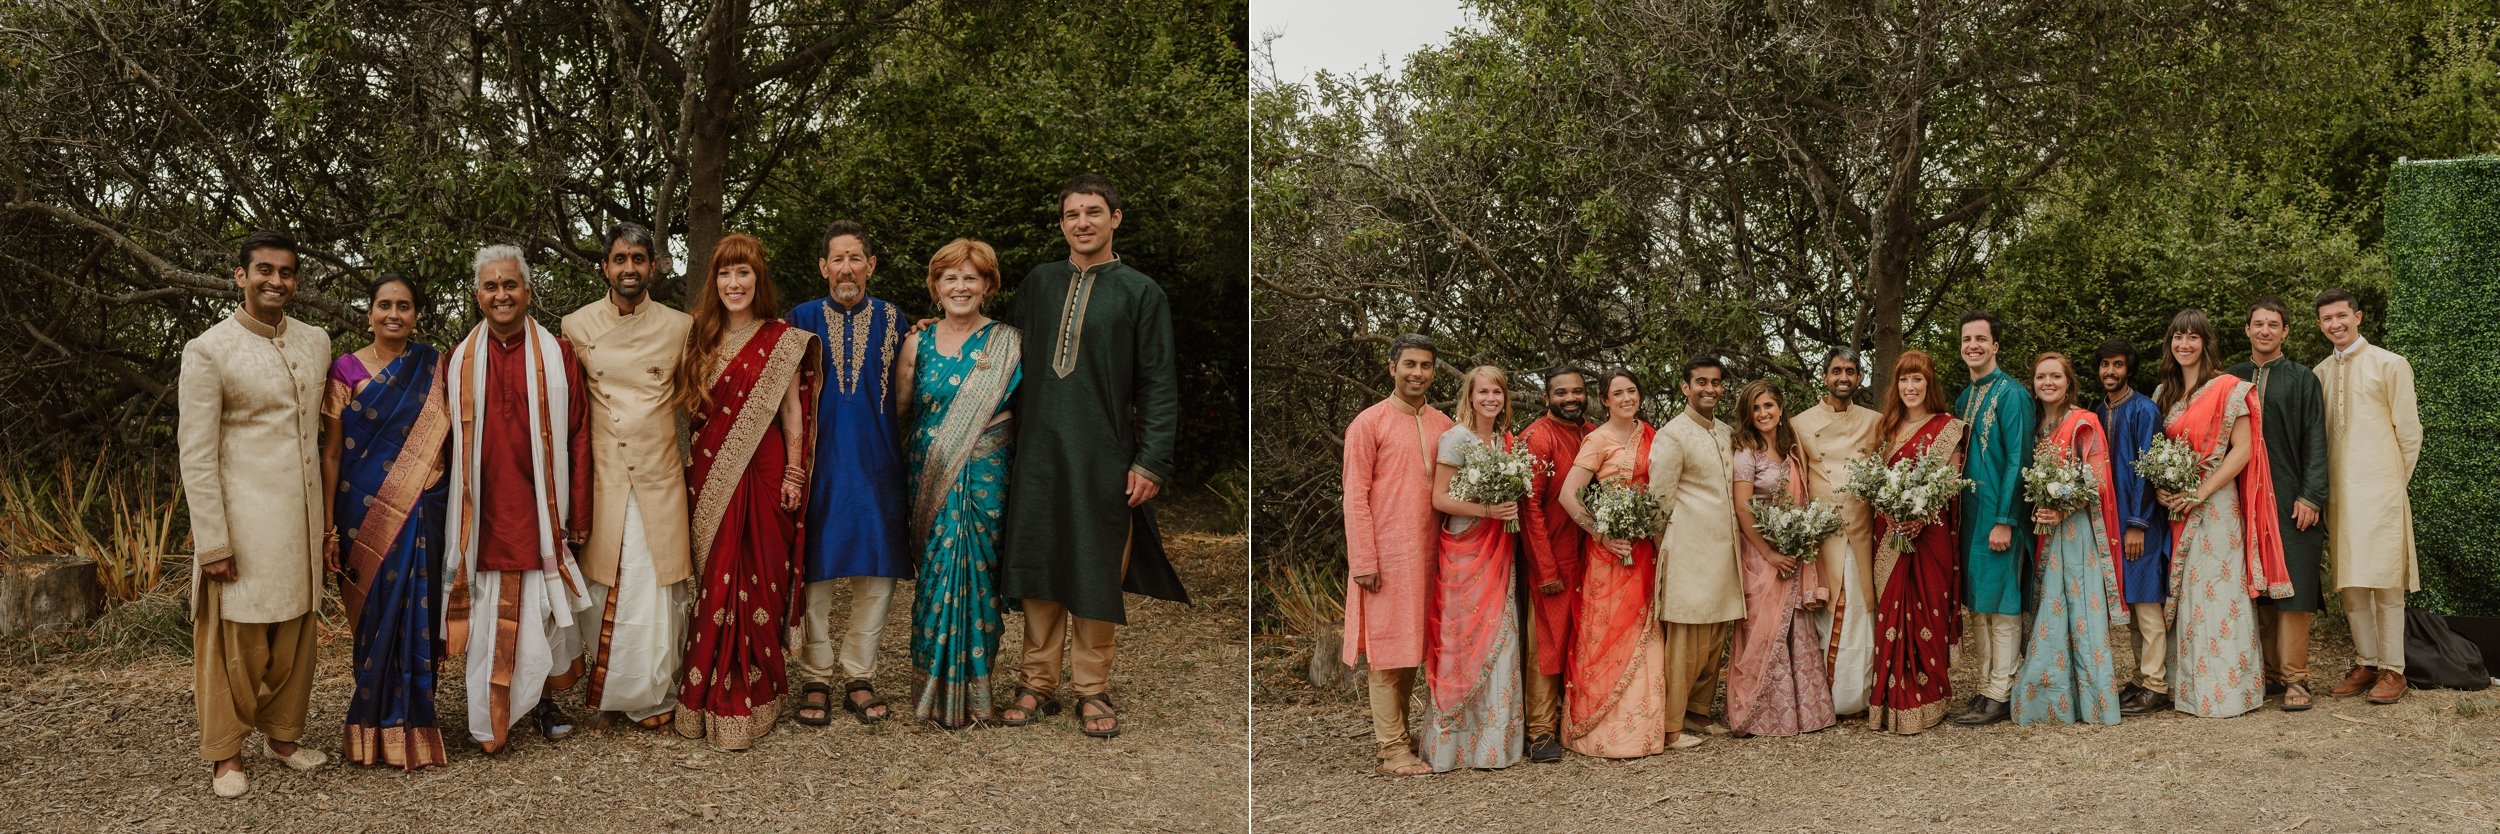 098-multicultural-hindu-indian-slide-ranch-wedding-muir-beach-vivianchen-0997_WEB.jpg